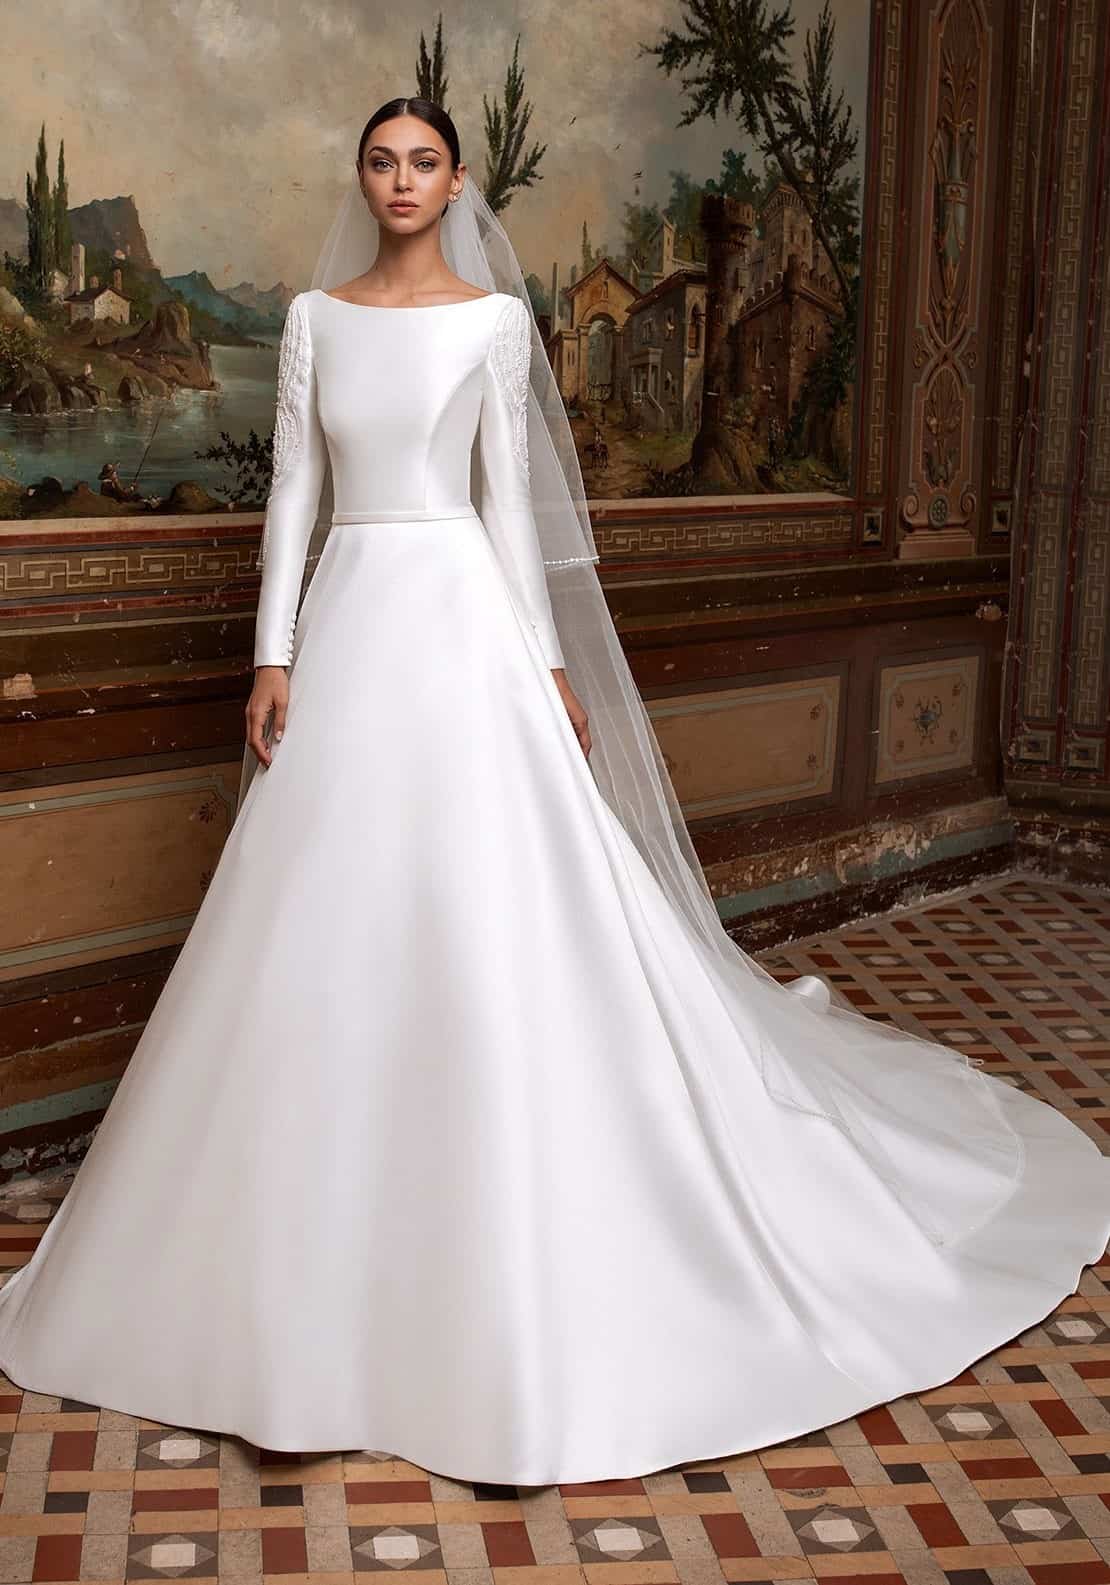 既婚女性の白いドレスの夢の解釈